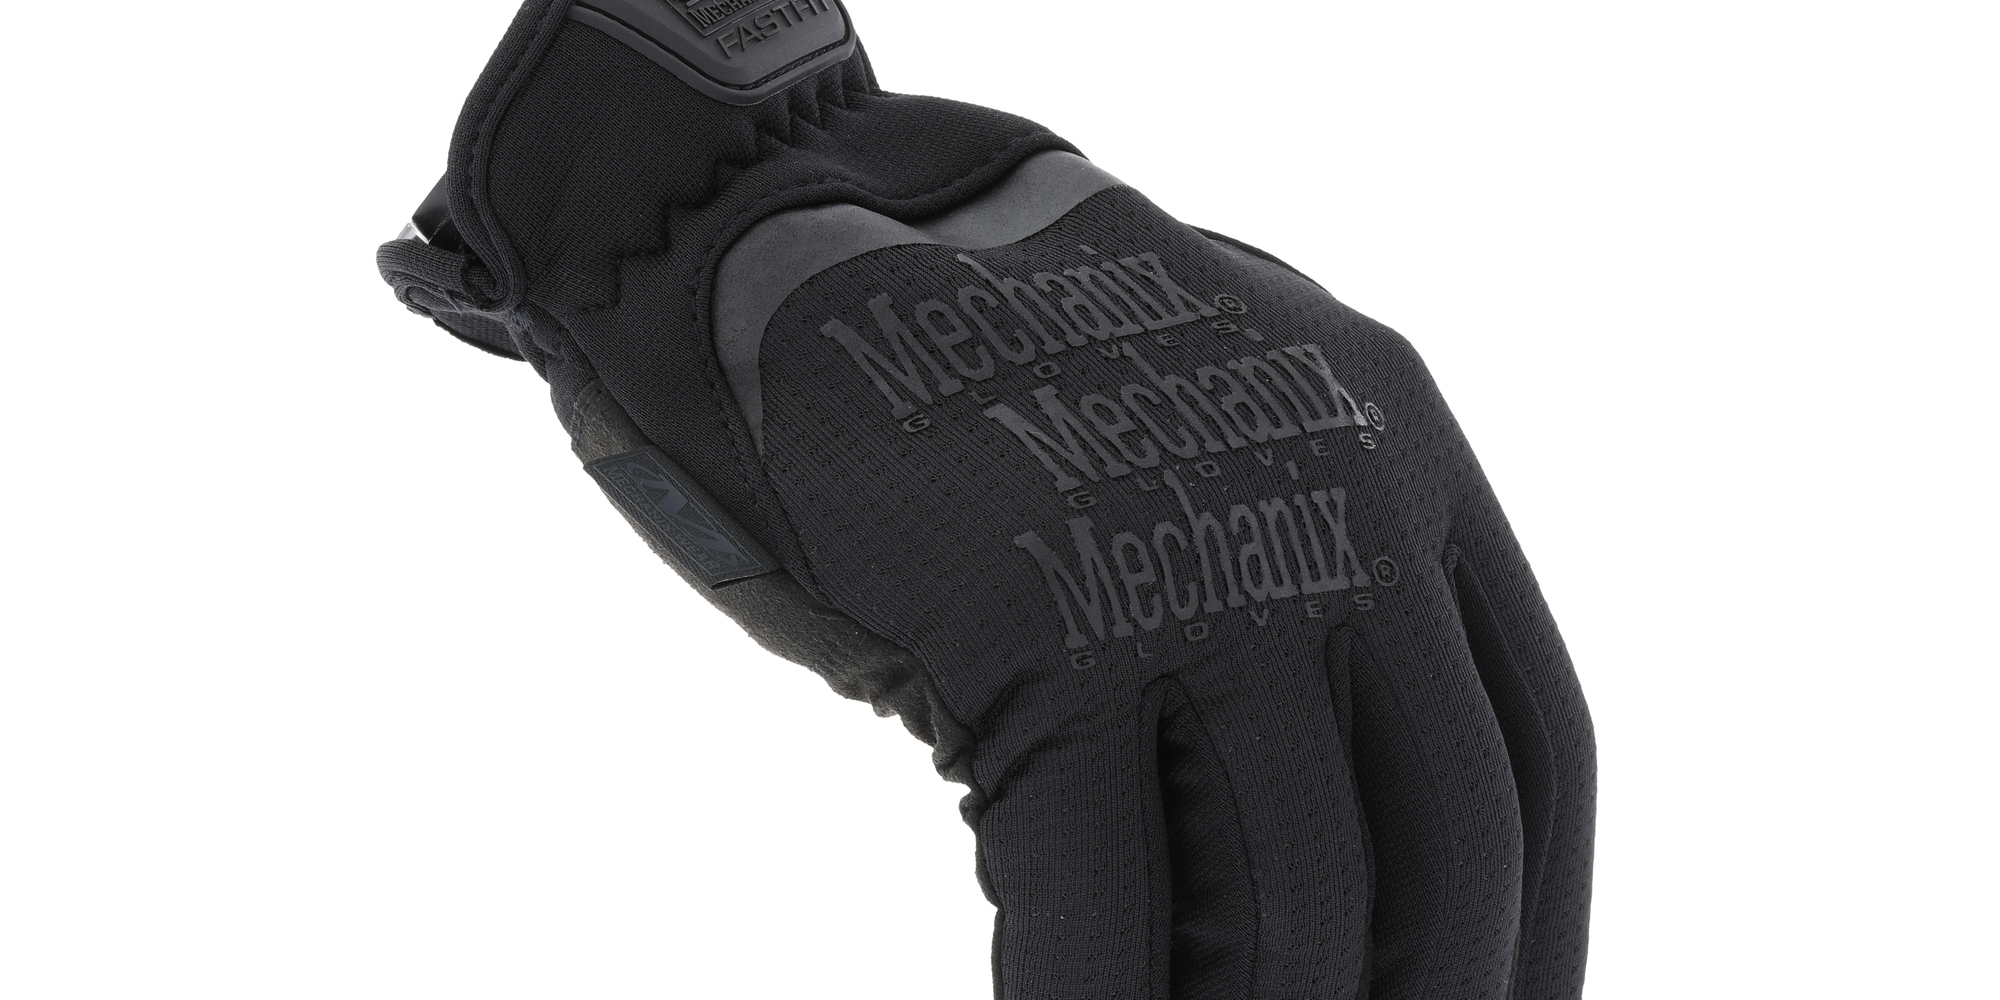 MECHANIX Zimné rukavice Tactical FastFit - Covert - čierne L/10